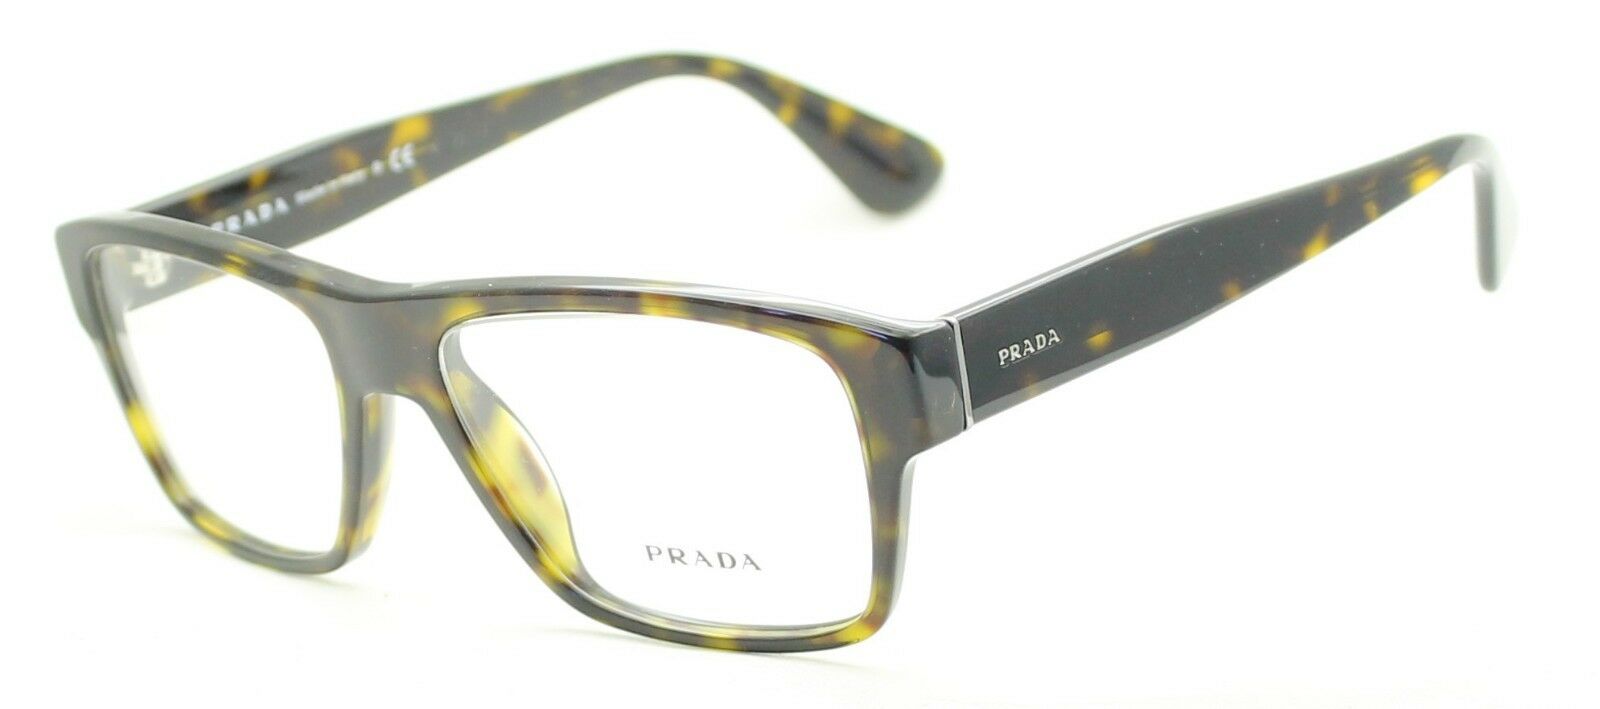 PRADA VPR 17S 2AU-1O1 53mm Eyewear FRAMES Eyeglasses RX Optical Glasses - Italy